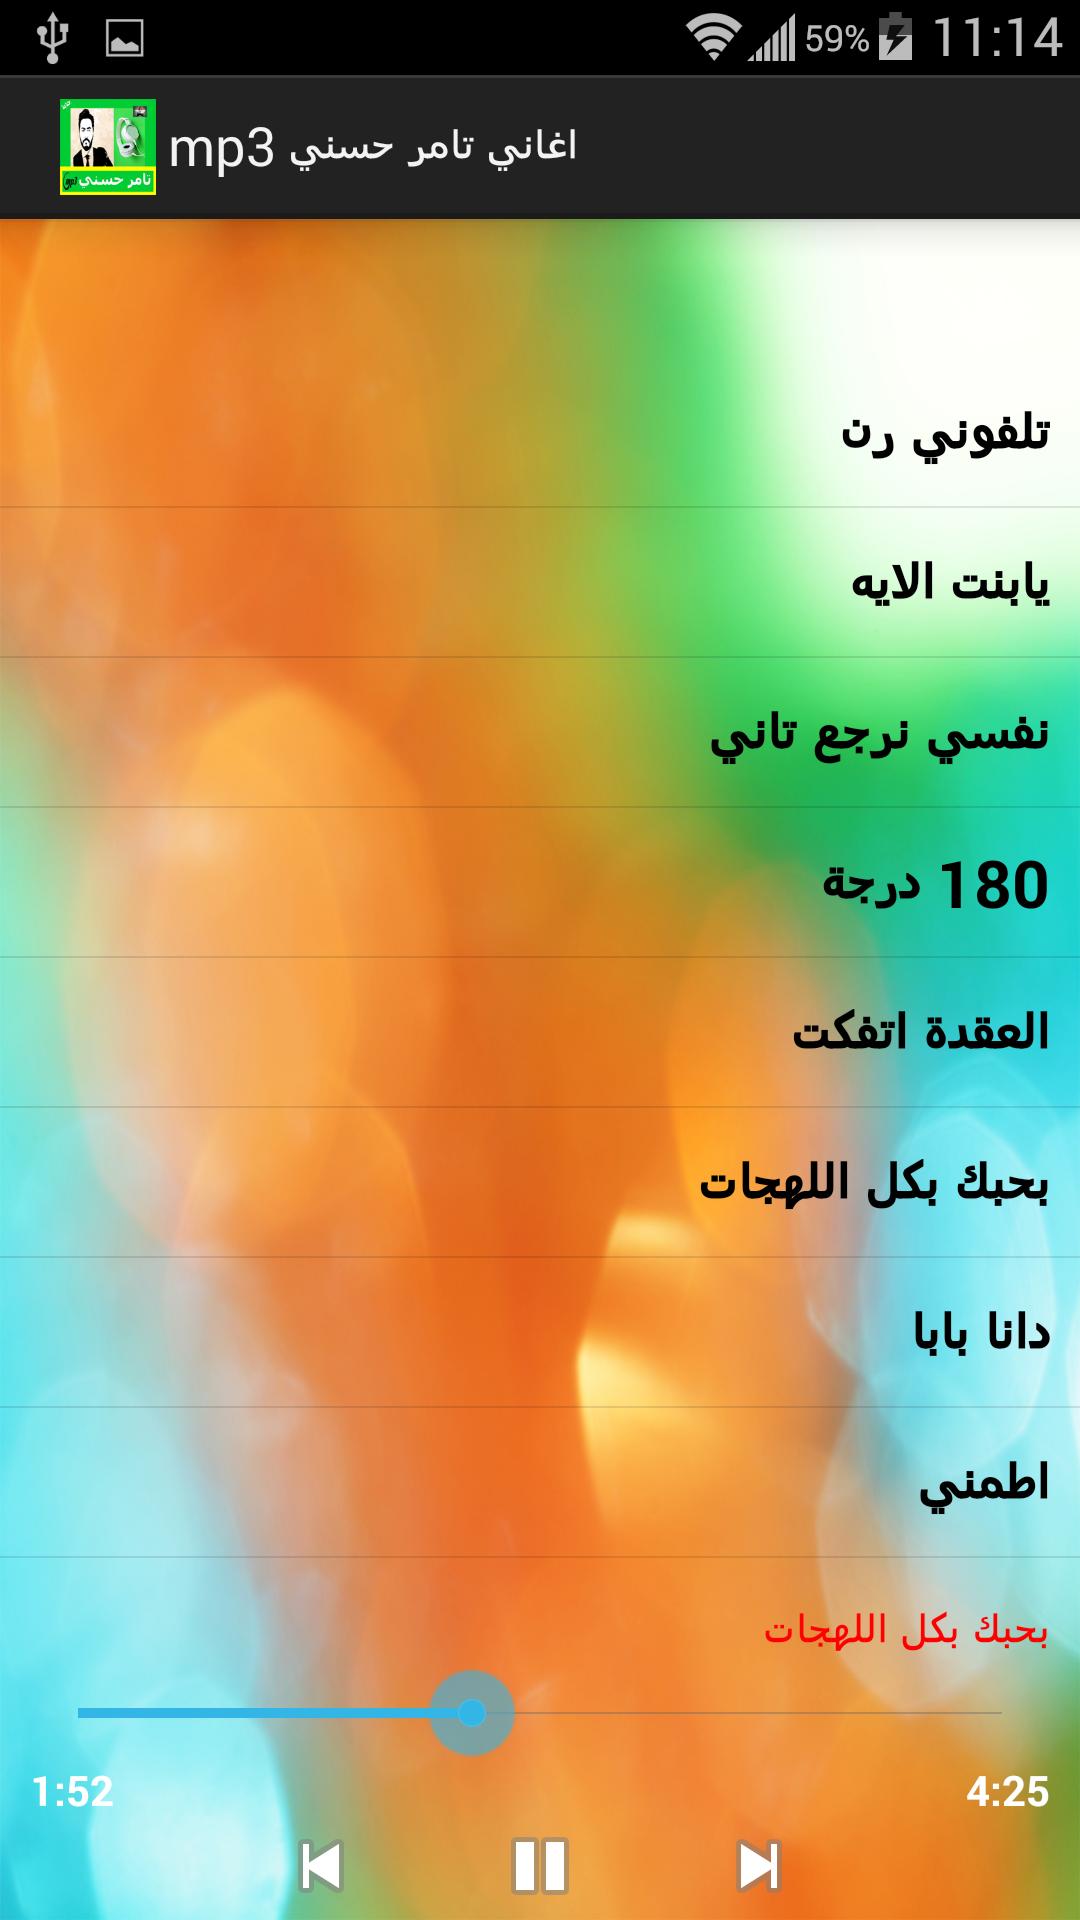 اغاني تامر حسني Mp3 For Android Apk Download